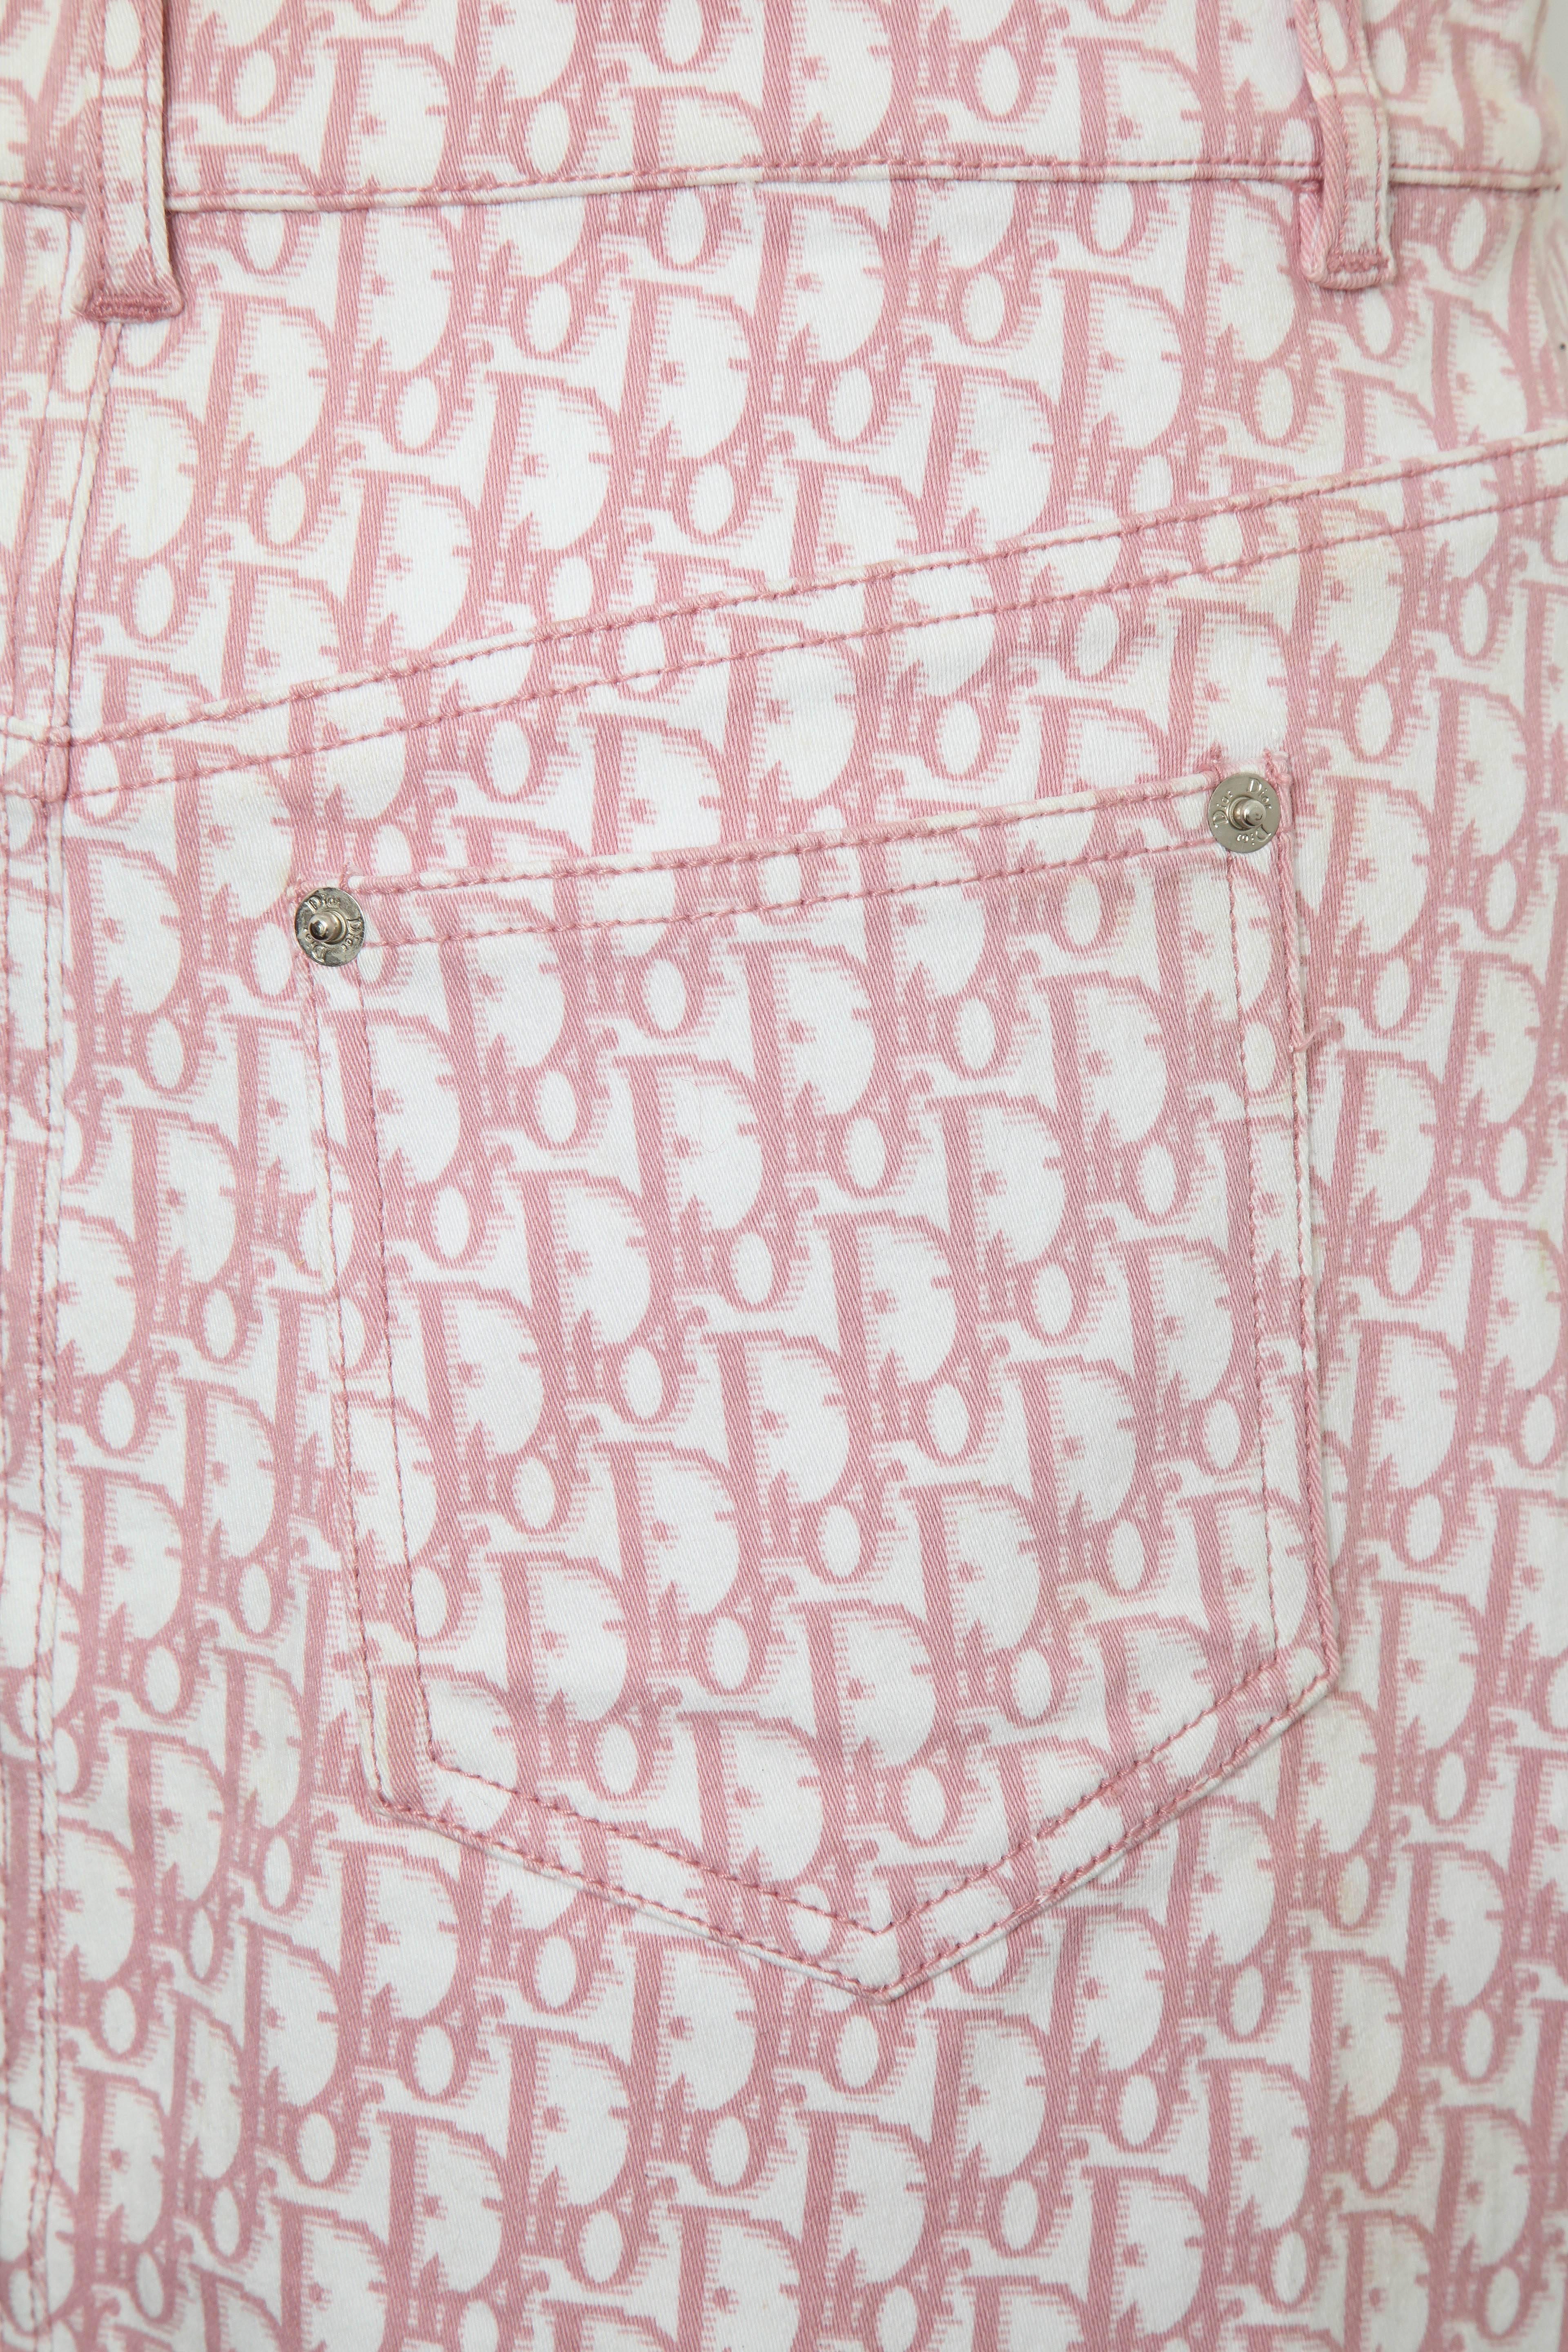 Beige John Galliano for Christian Dior Pink Trotter Logo Skirt